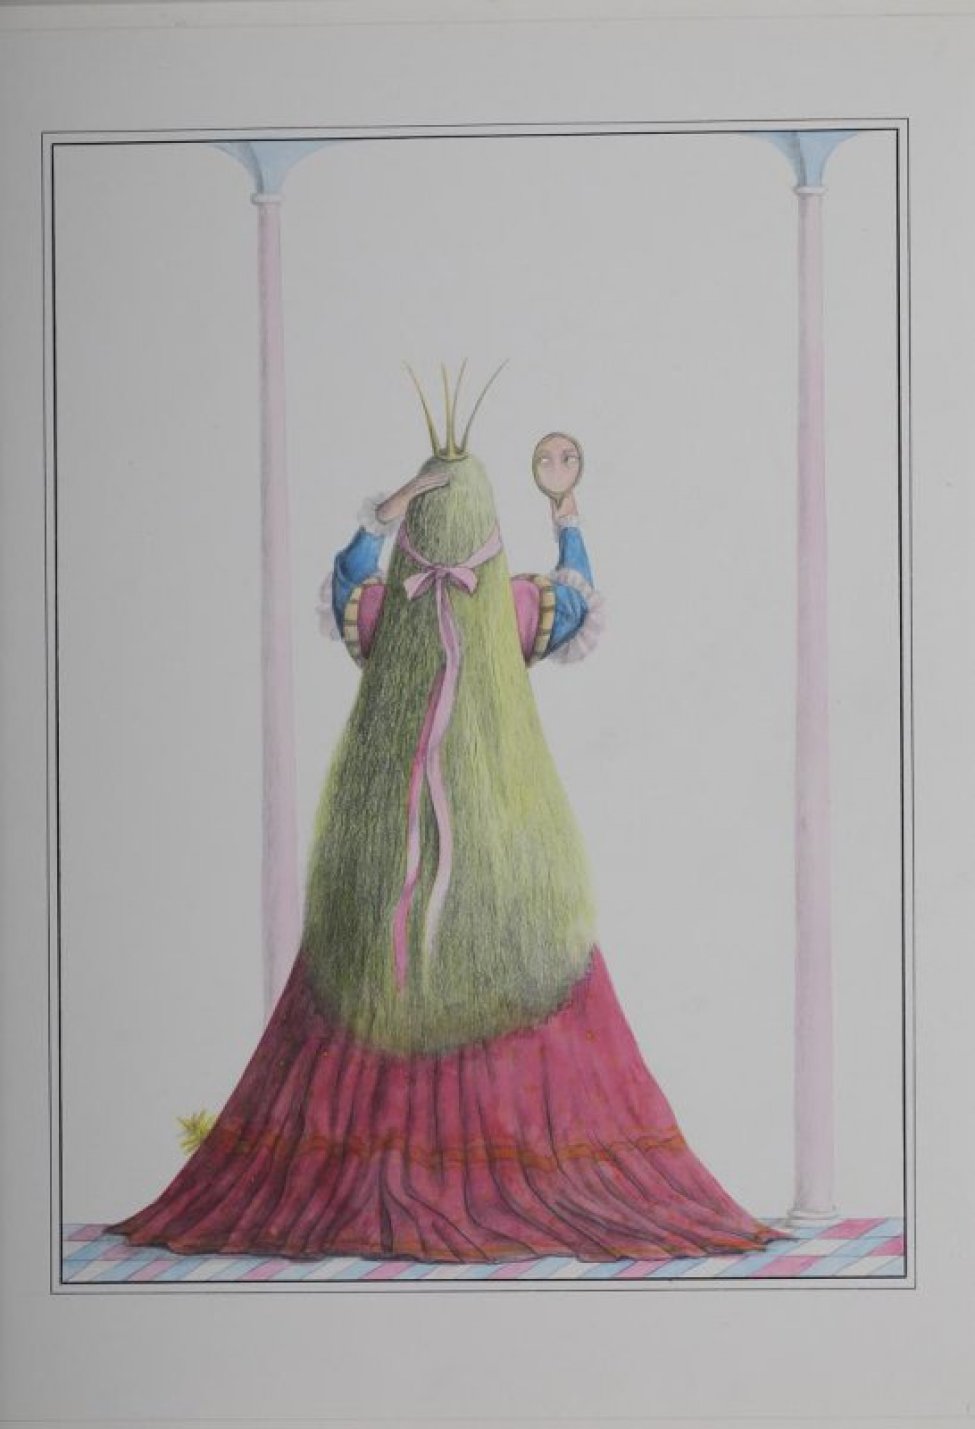 Изображена со спины стоящая у колонны женщина в длинном малиновом платье с короной на голове; в правой руке зеркало.